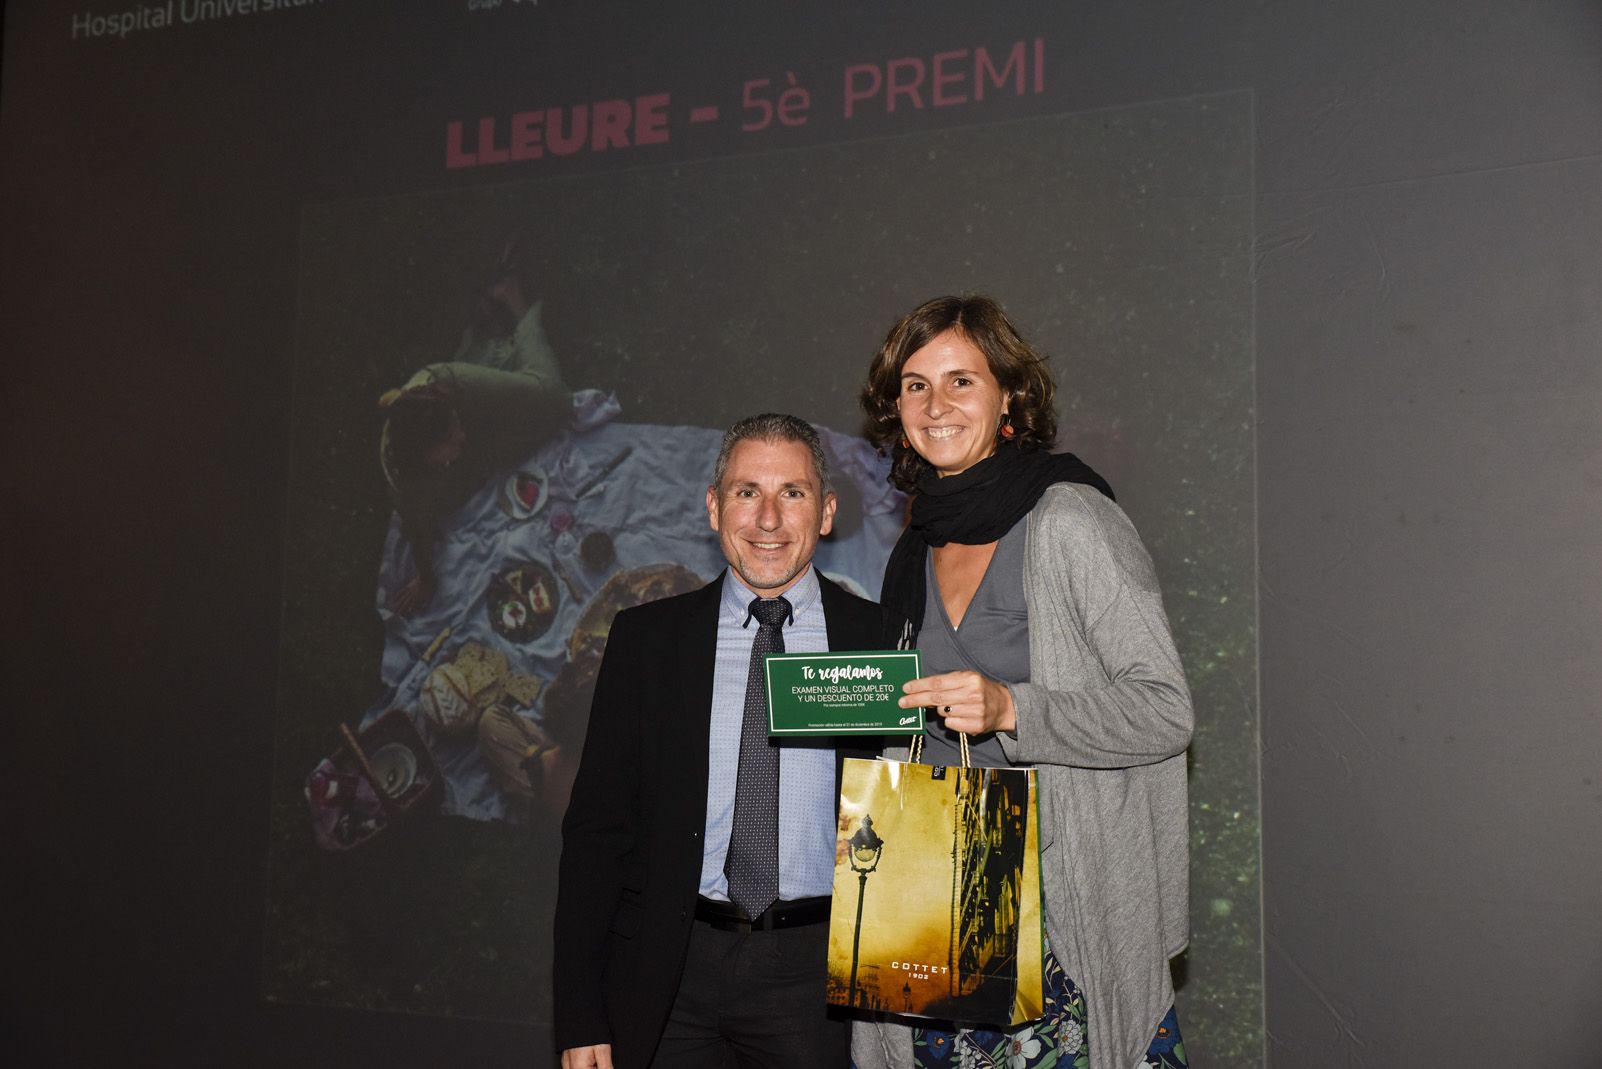 5è premi ‘Lleure’ Lenka Selinger - Picnic d'estiu. Foto: Bernat Millet.